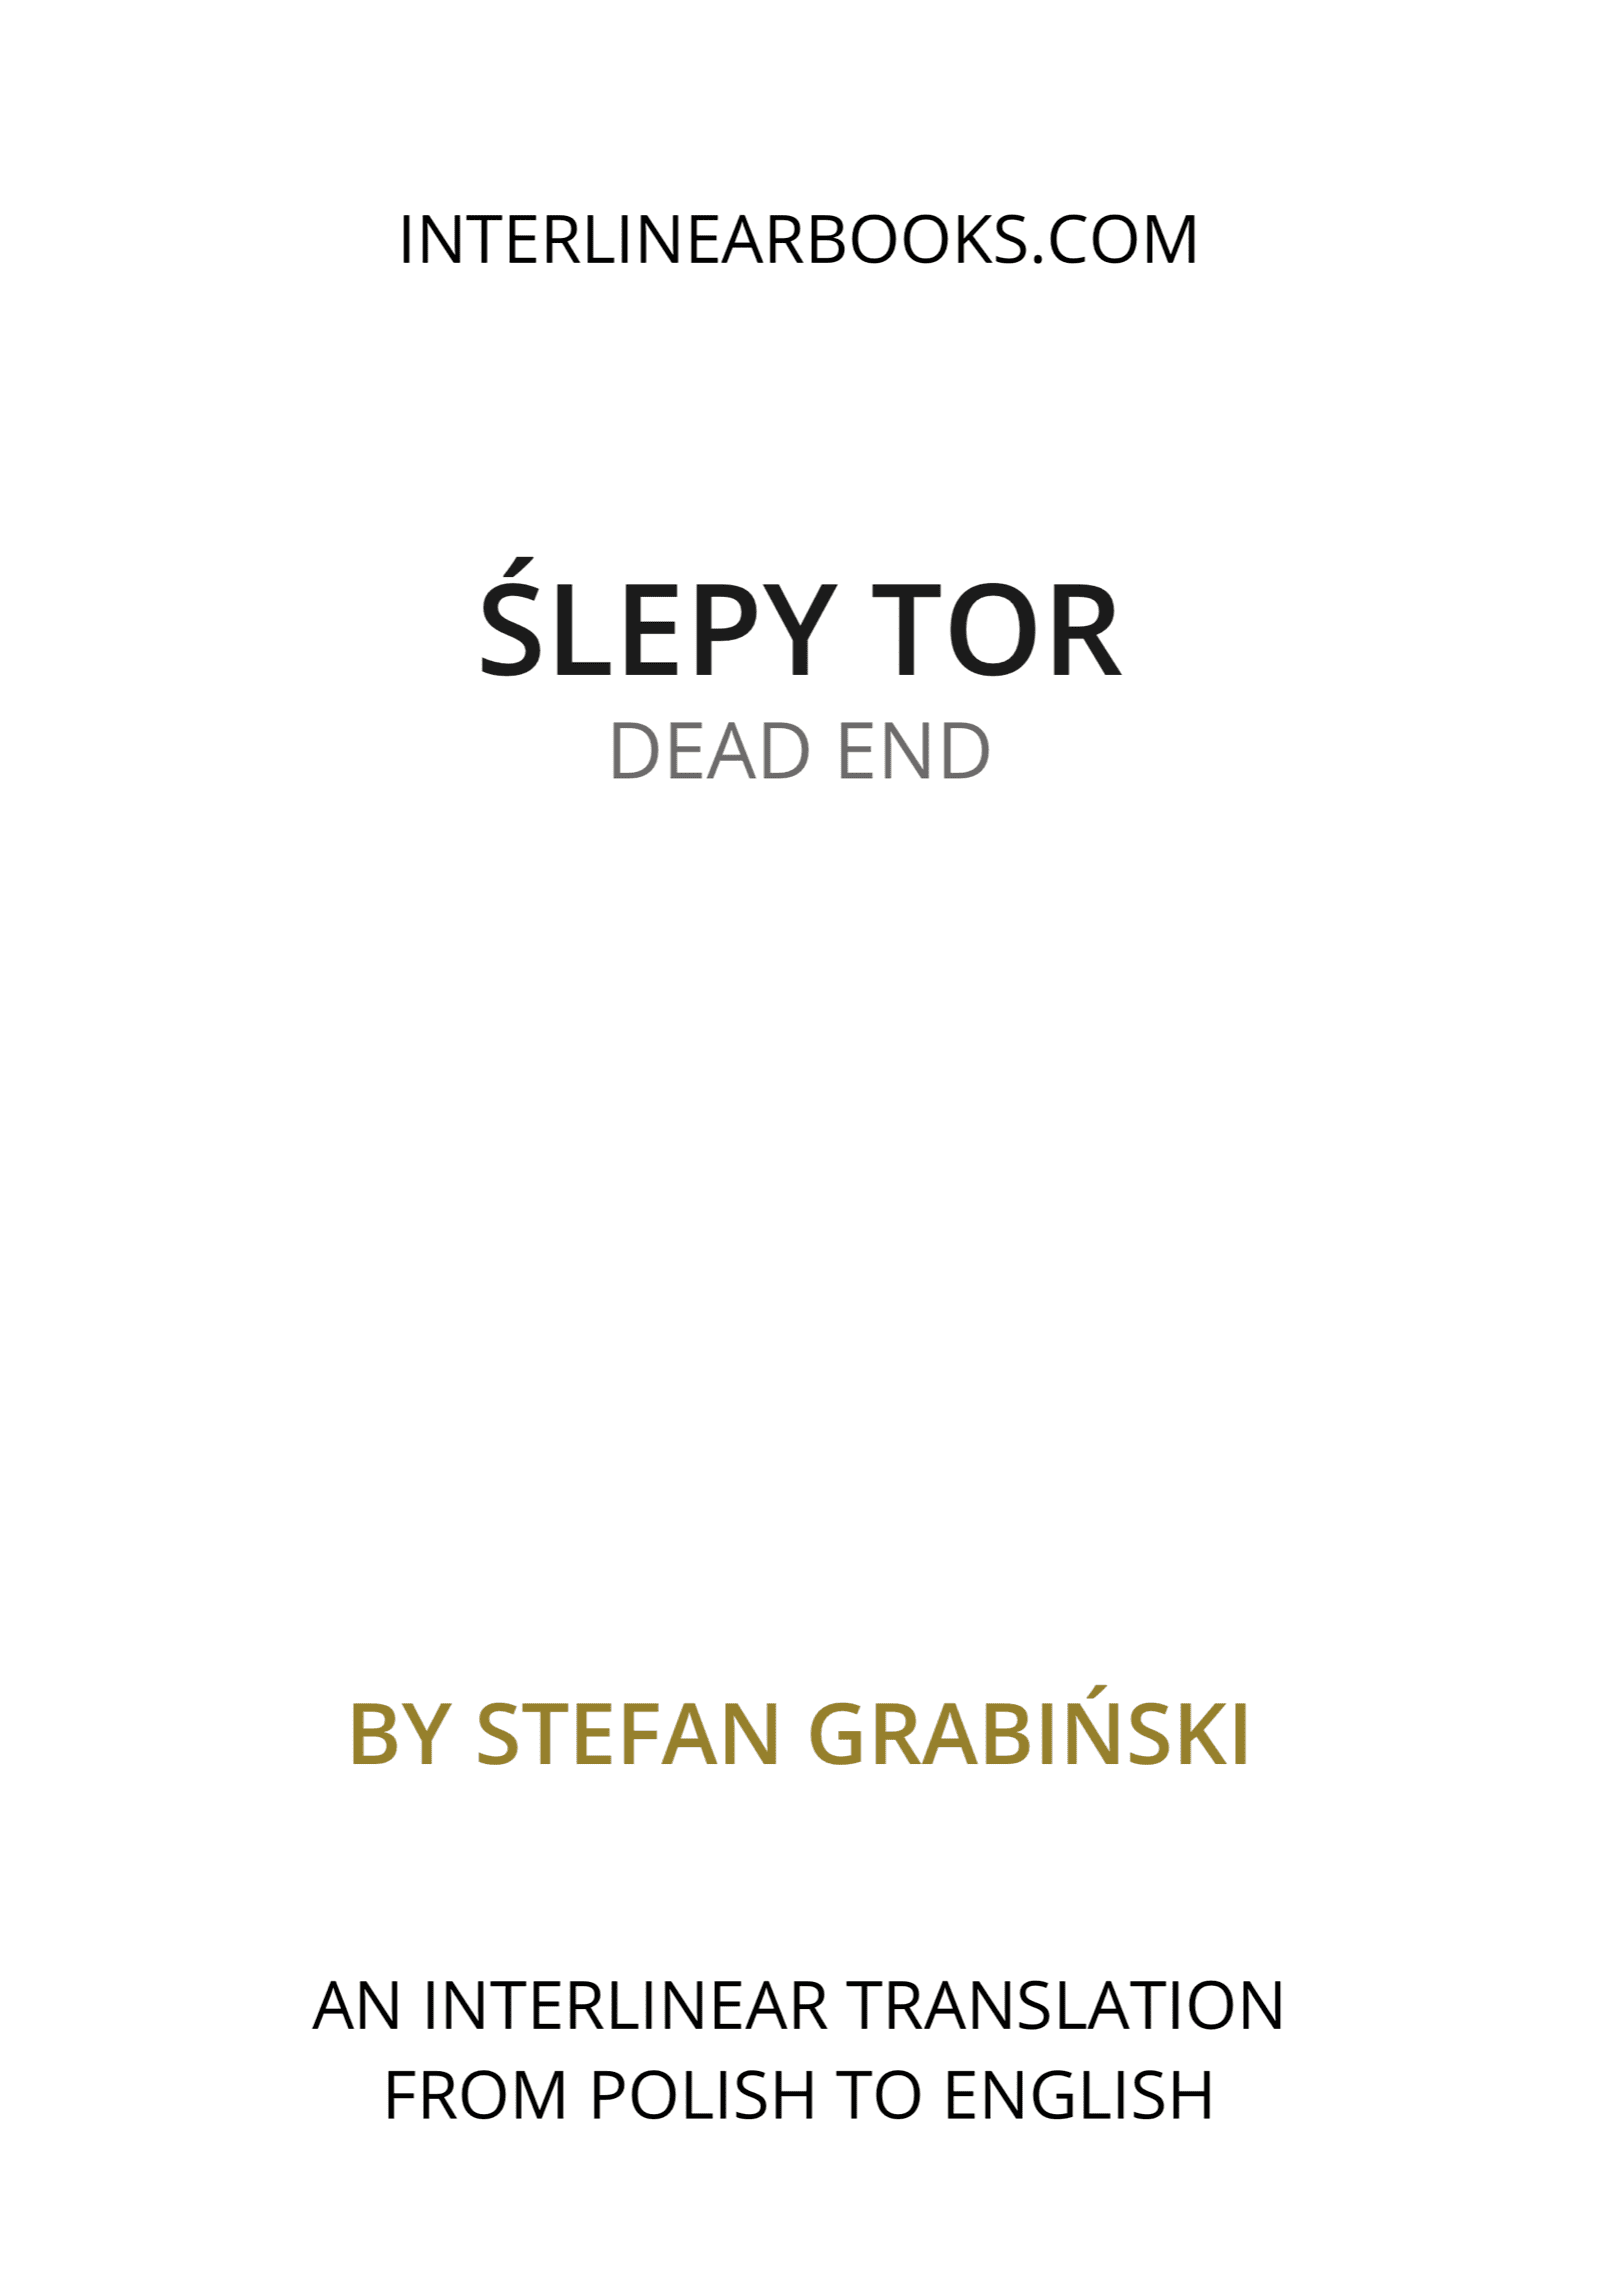 Polish book: Ślepy tor / Dead End